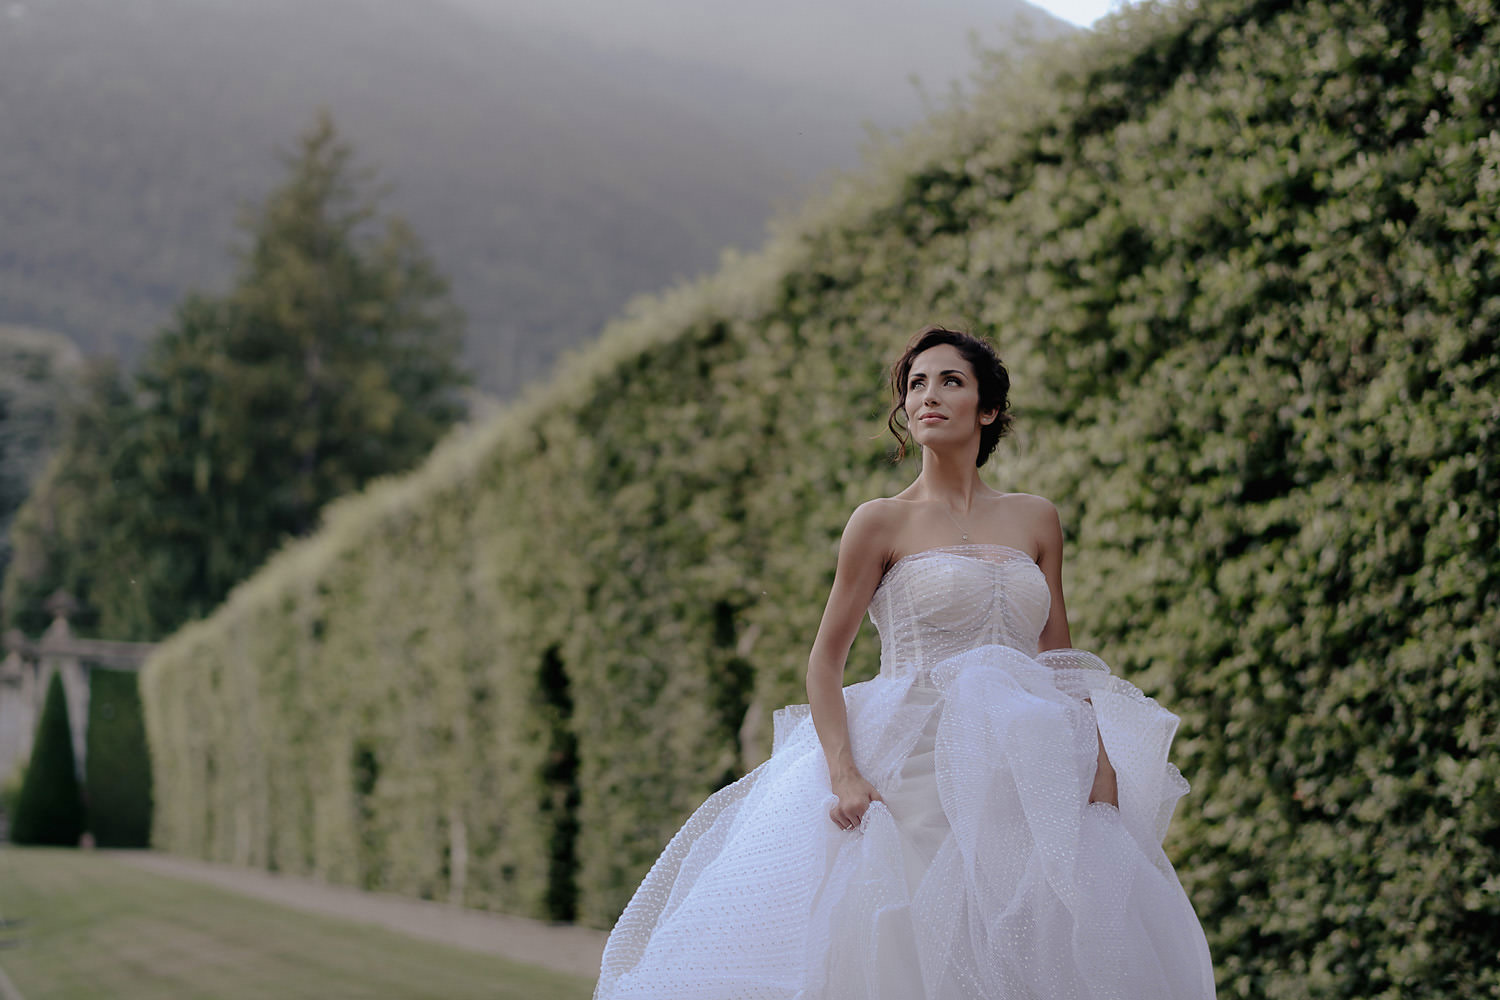 villa balbiano wedding photographer lake como bride portraits italian garden